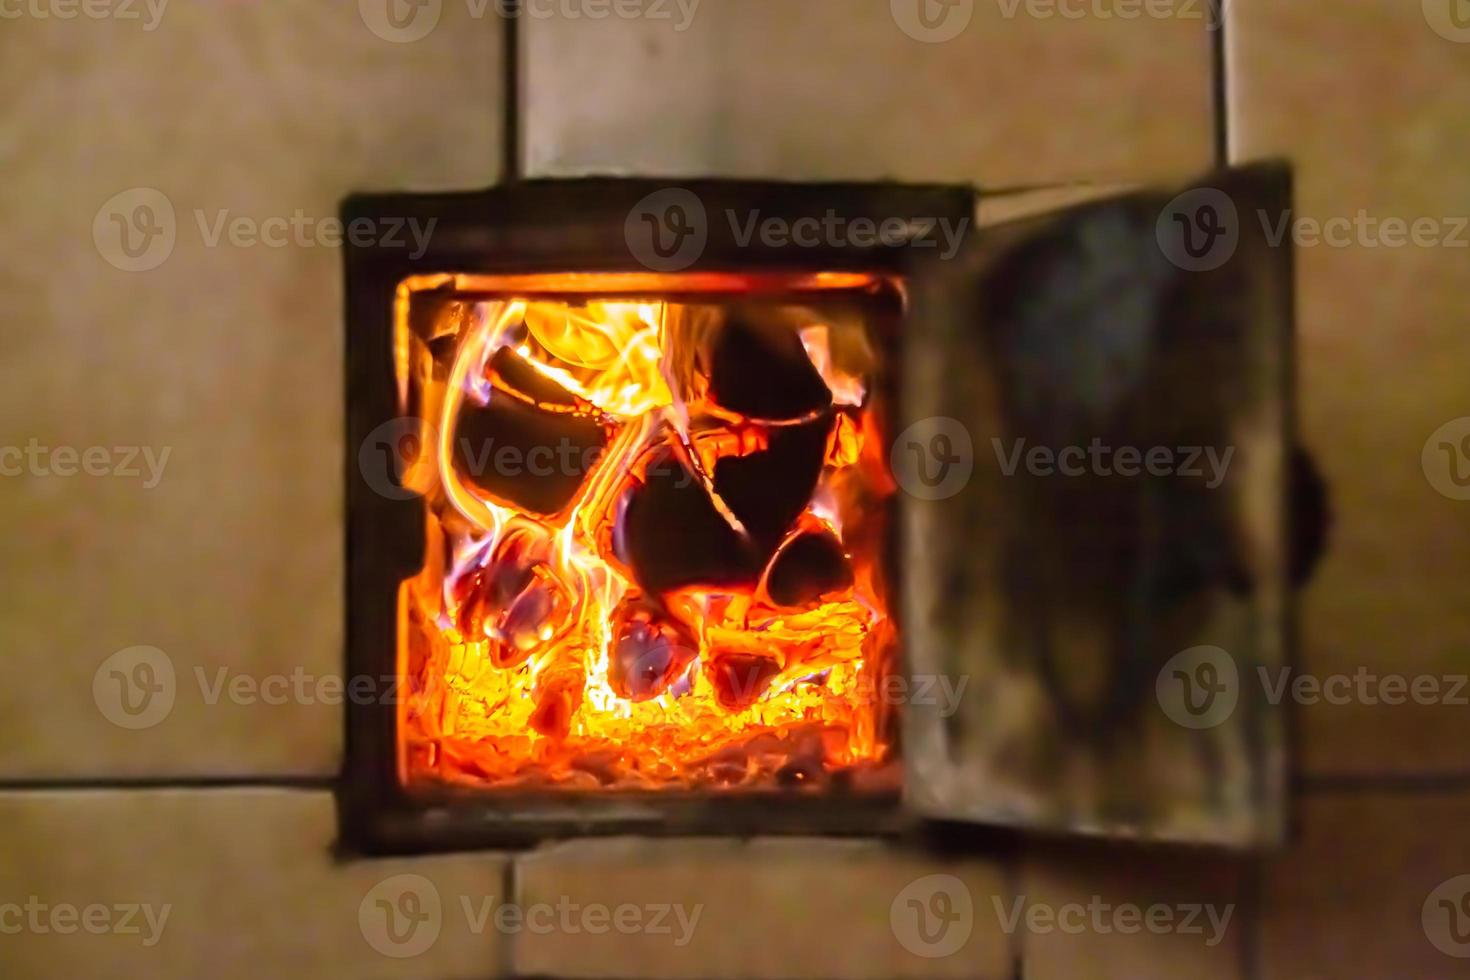 hermosa chimenea antigua con fuego de llama ligera para calentar la habitación del edificio foto